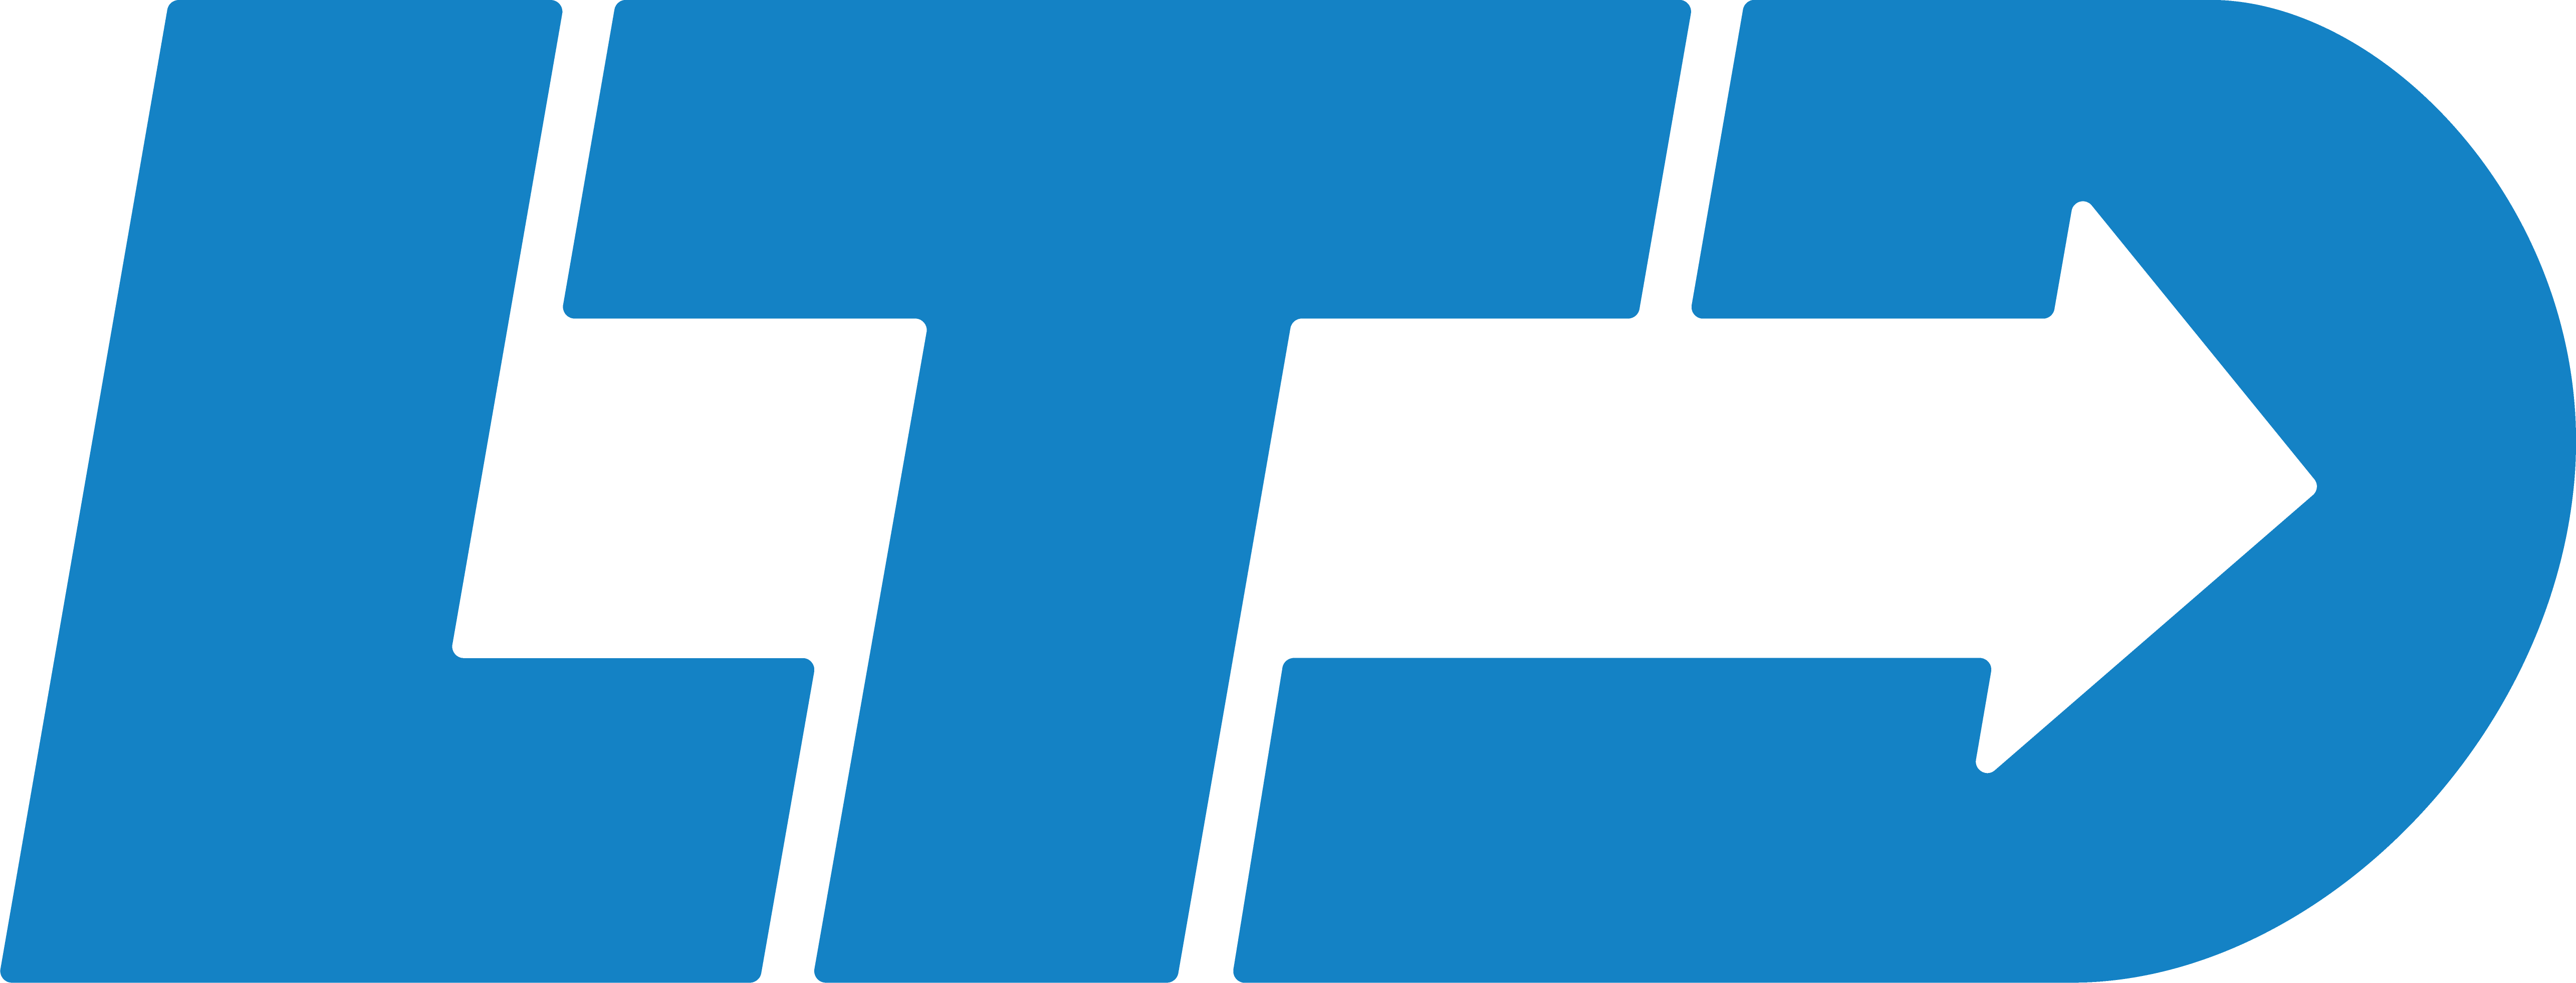 LTD Logo